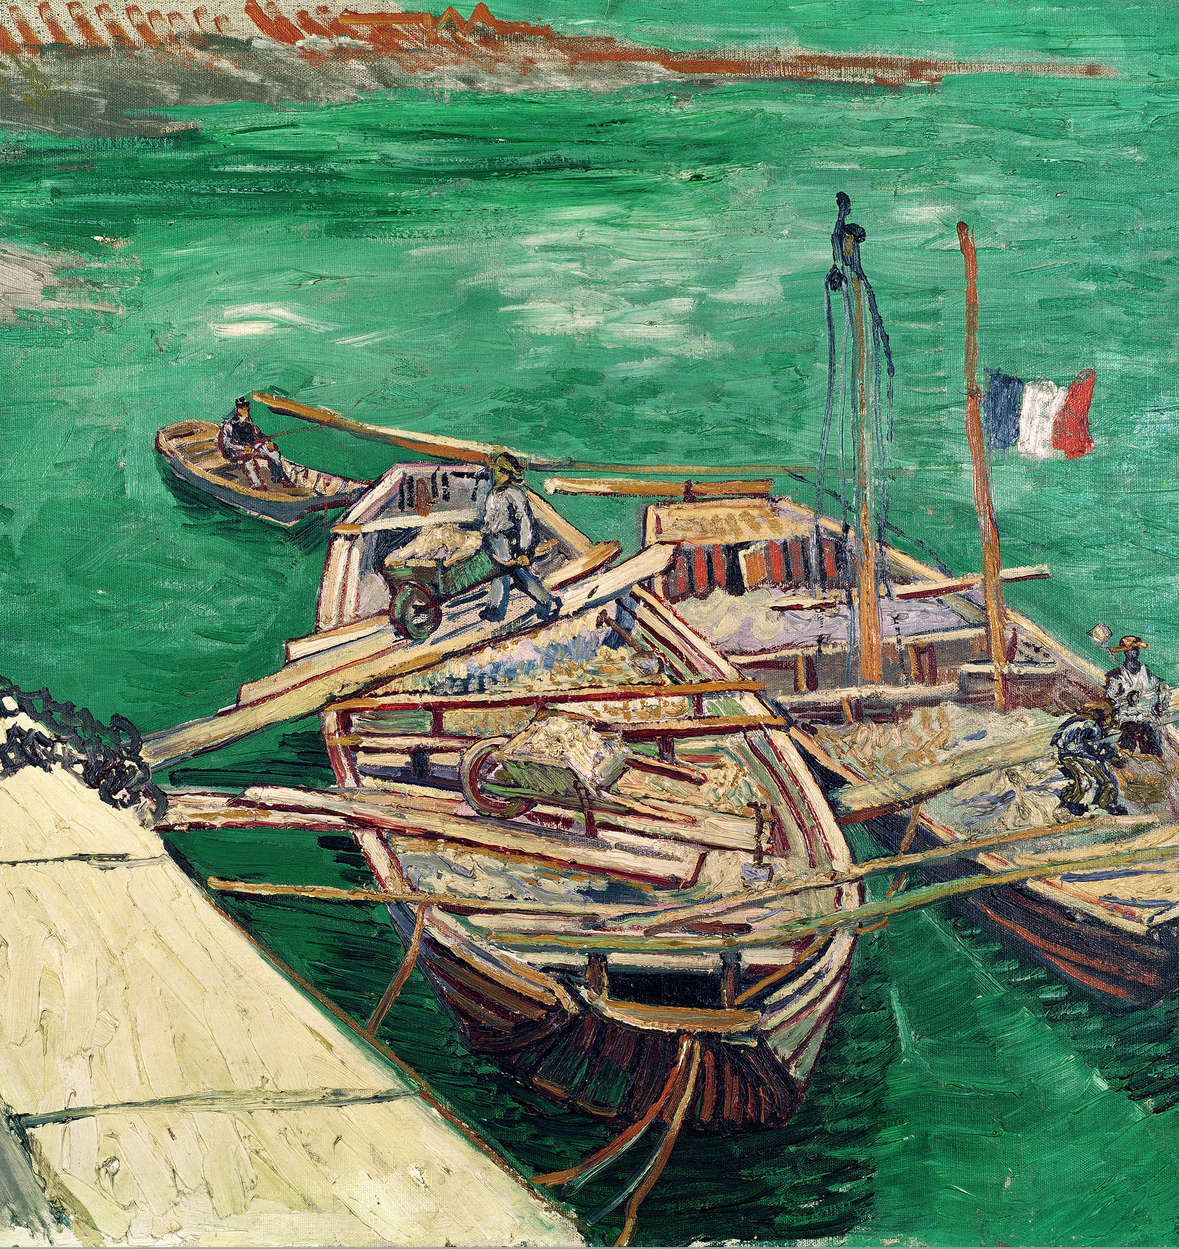             Mural "Muelle con barcos" de Vincent van Gogh
        